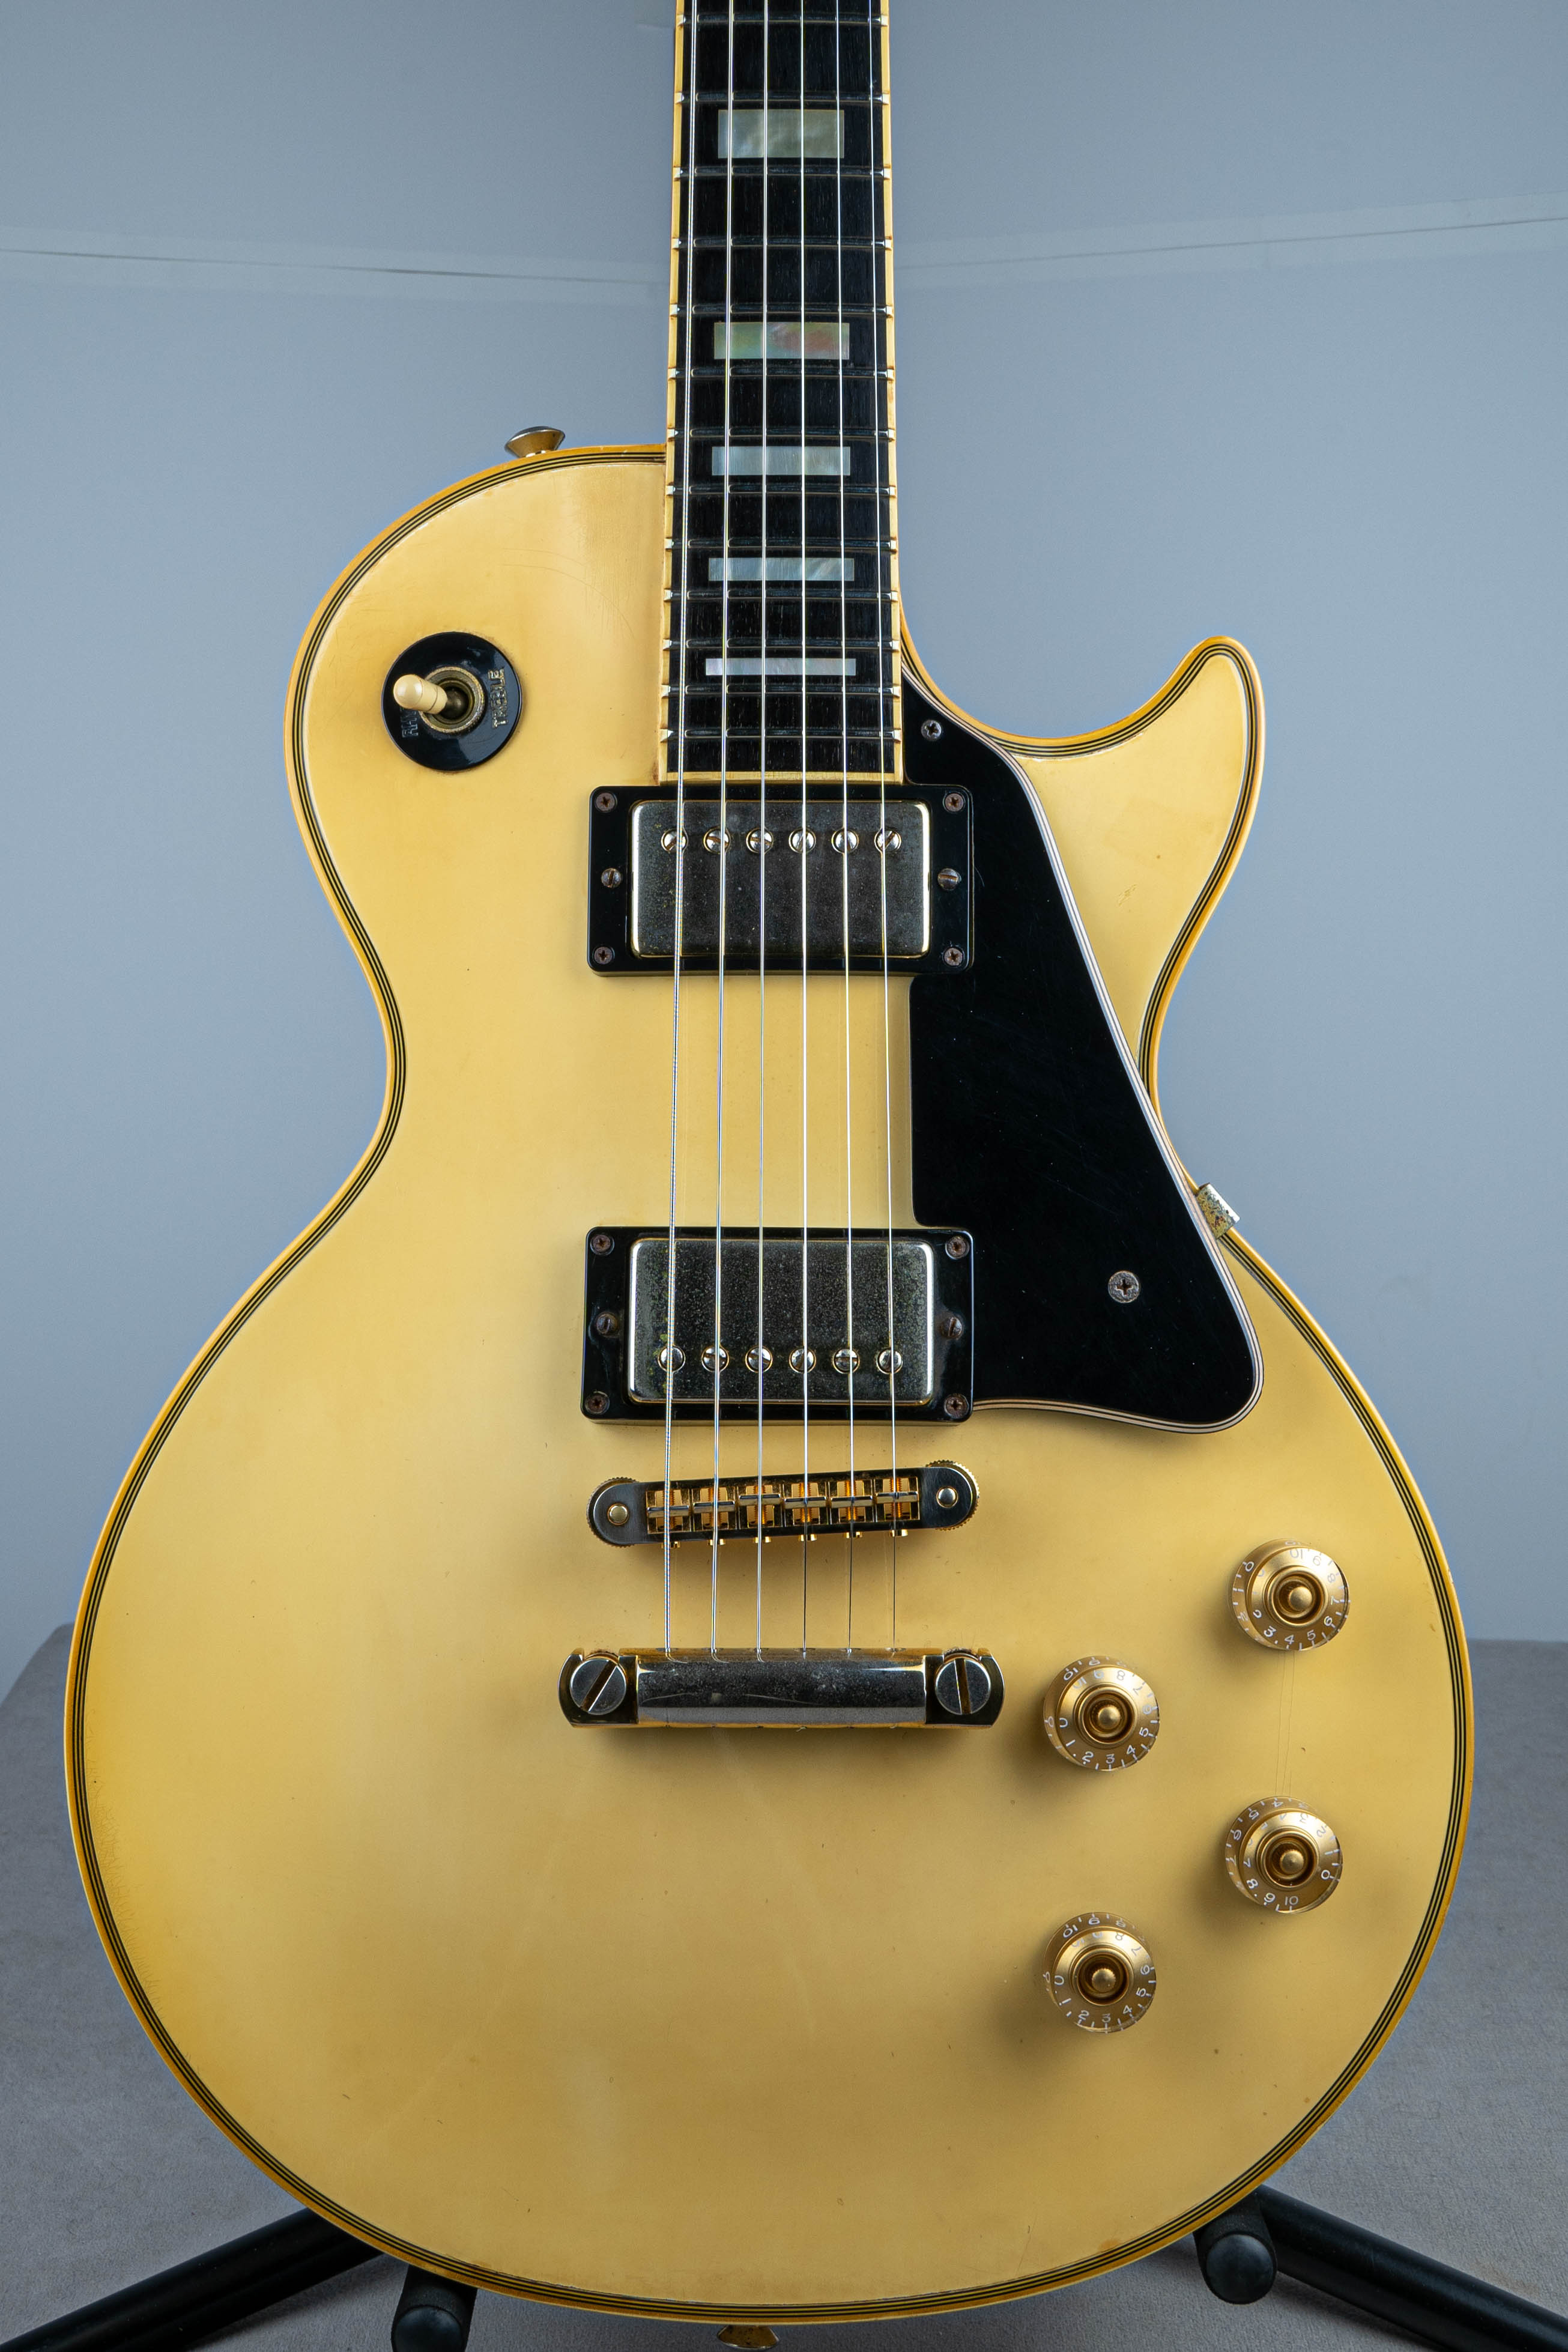 コット型Gibson Les Paul Custom Alpine White 1998 ギブソン レスポール カスタム ホワイト エボニー指板 フレット交換あり 良品中古 希少 ギブソン